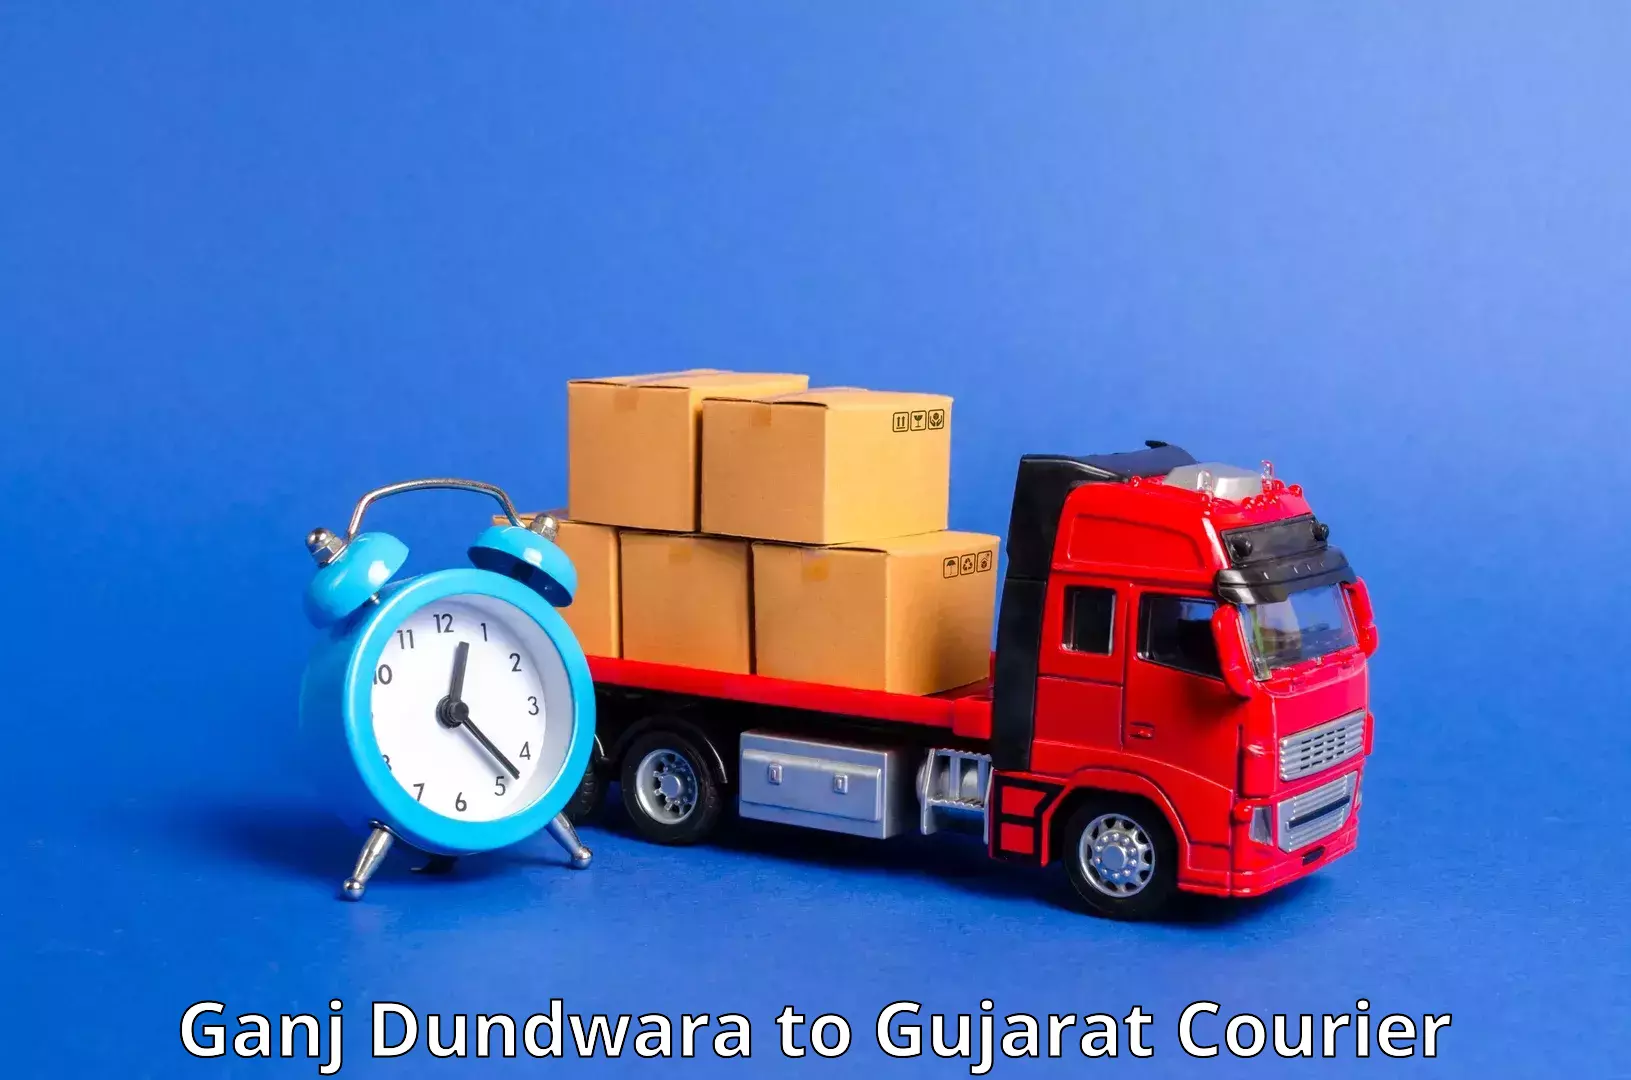 Professional courier handling Ganj Dundwara to Hazira